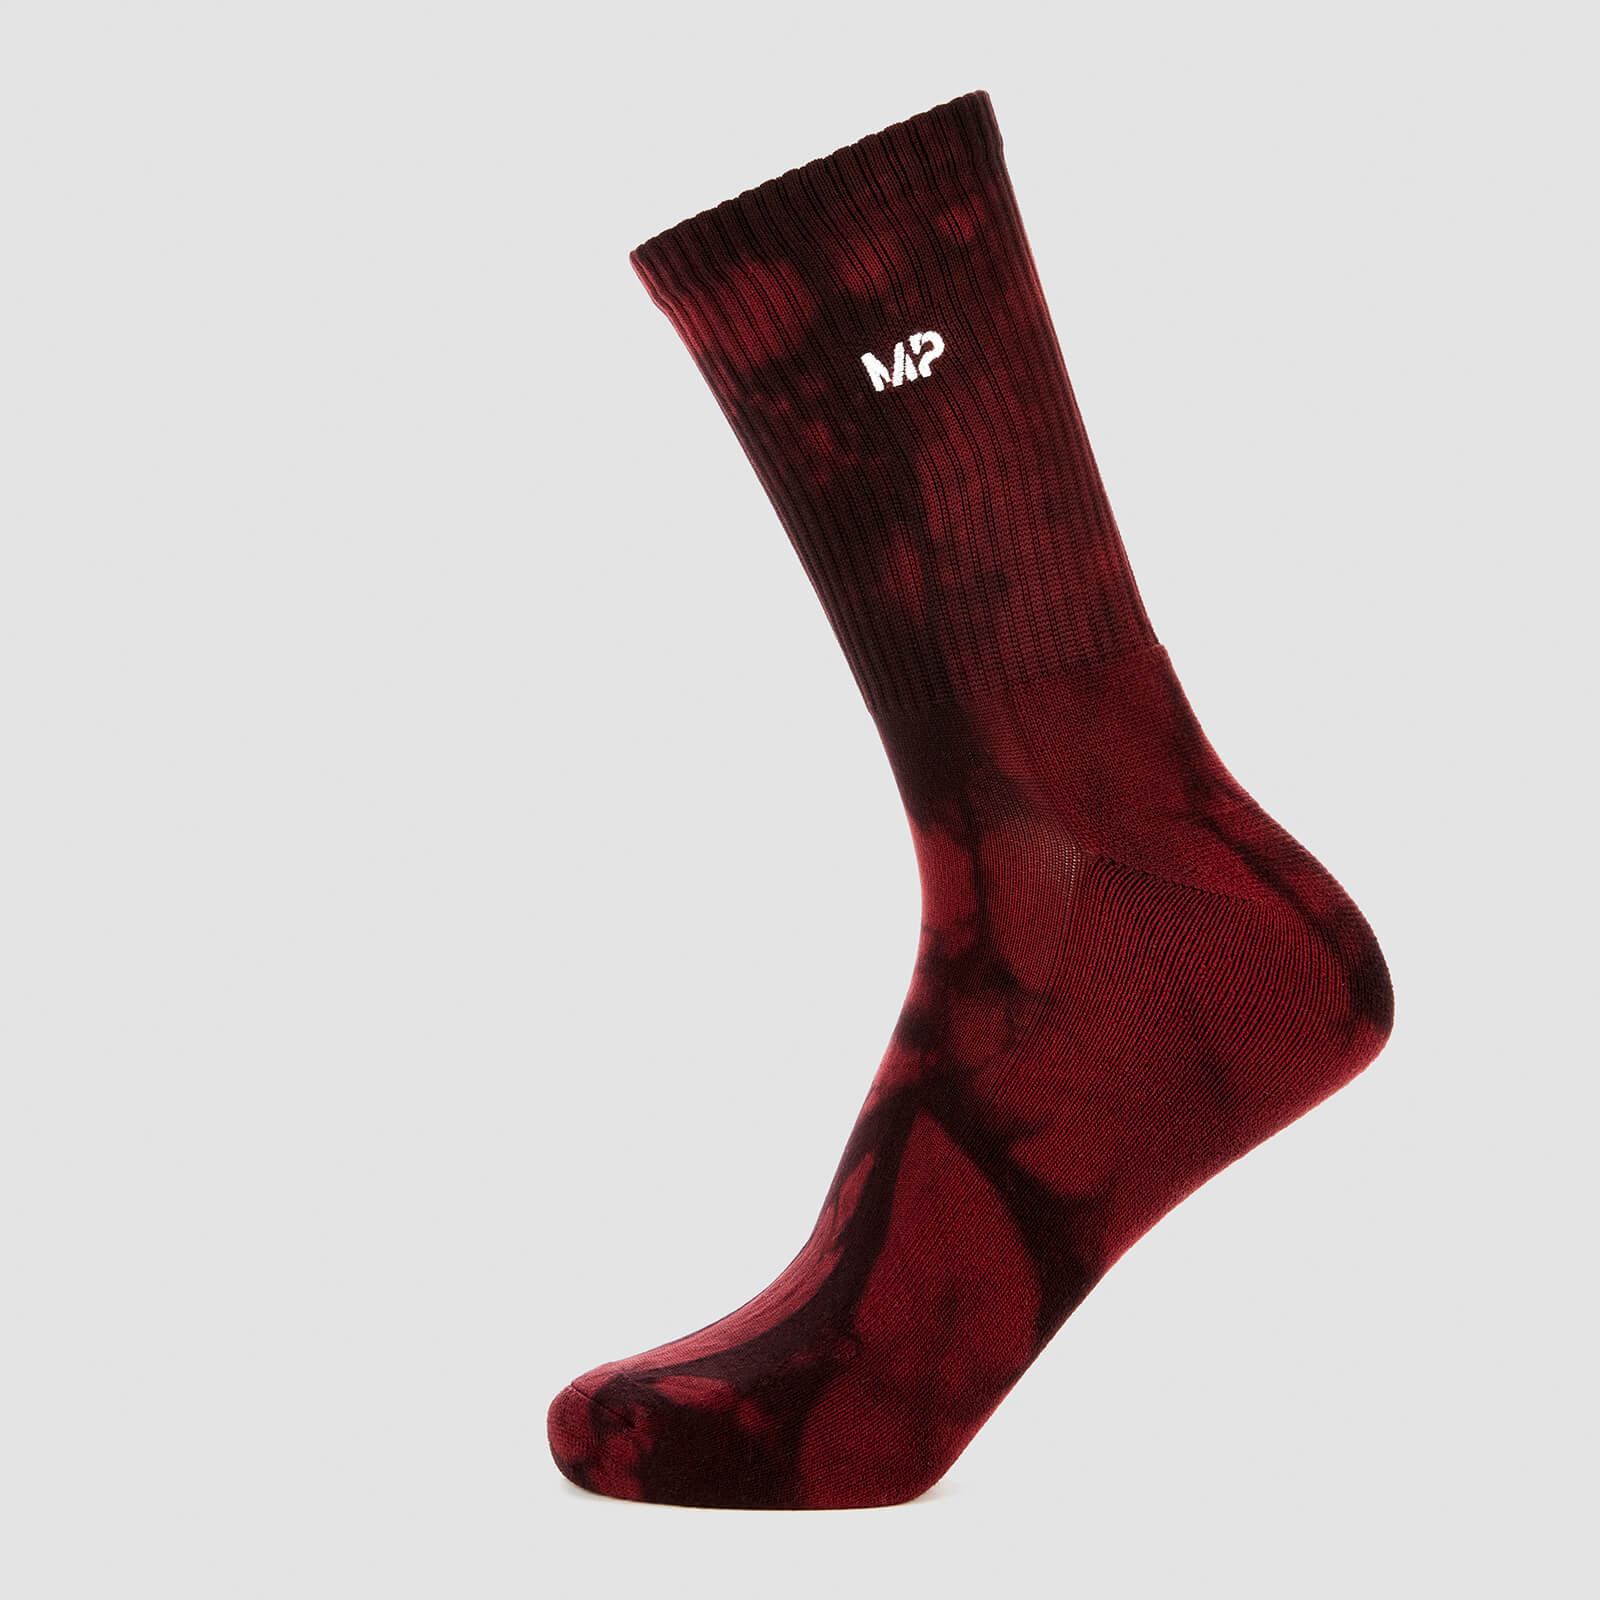 MP Adapt Tie Dye Socks - UK 6-8